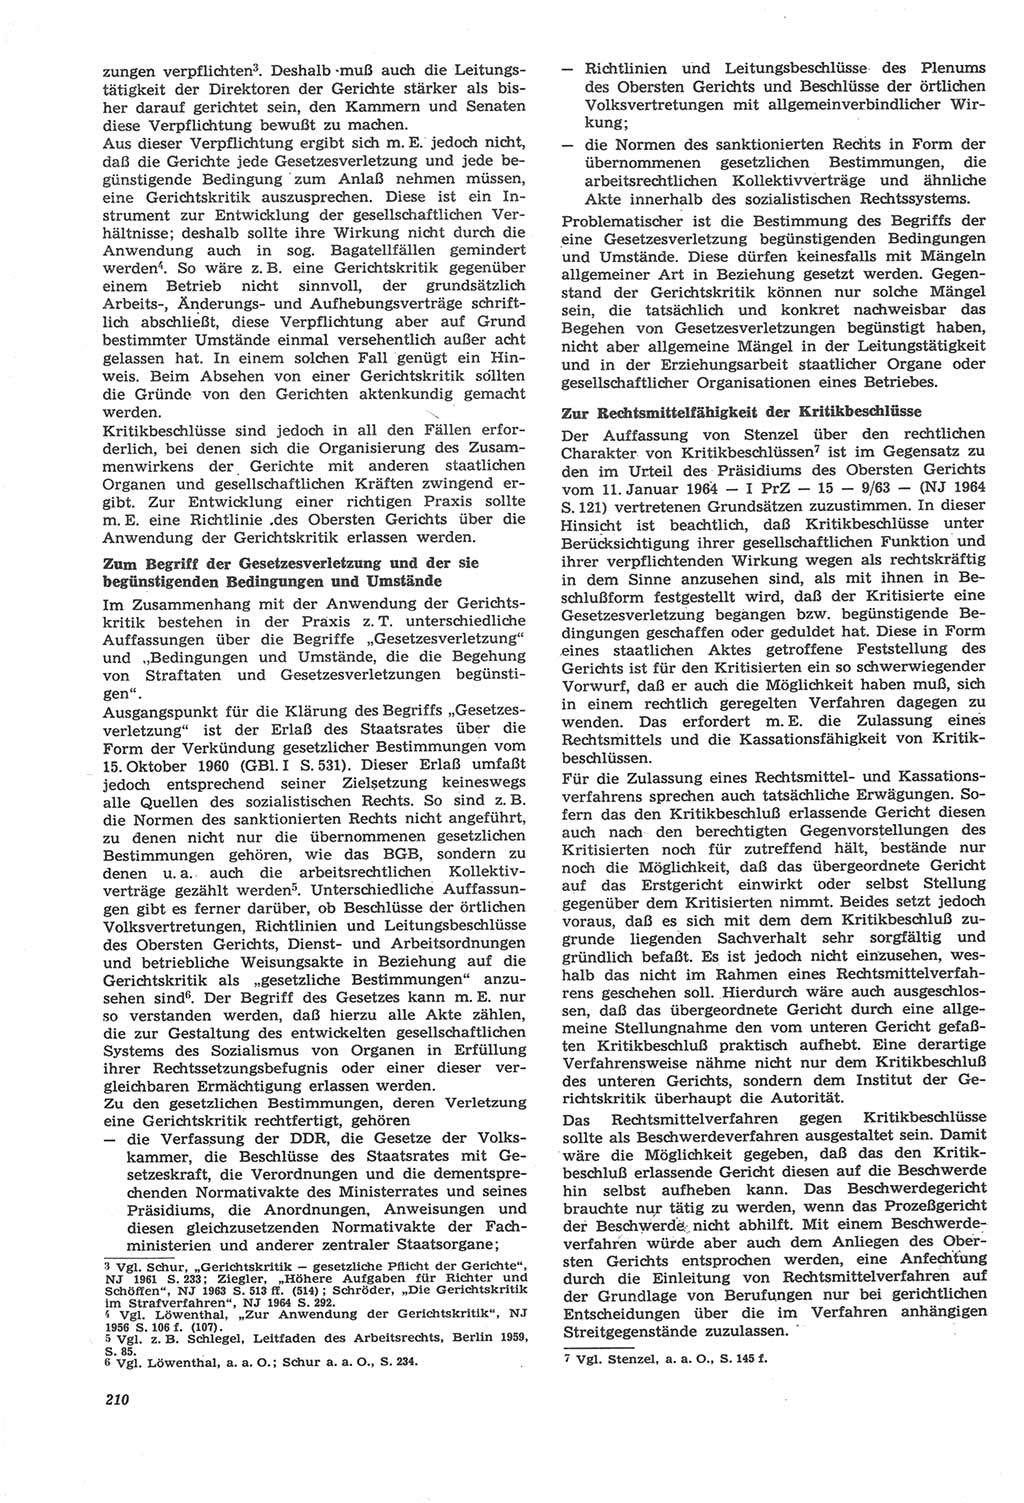 Neue Justiz (NJ), Zeitschrift für Recht und Rechtswissenschaft [Deutsche Demokratische Republik (DDR)], 22. Jahrgang 1968, Seite 210 (NJ DDR 1968, S. 210)